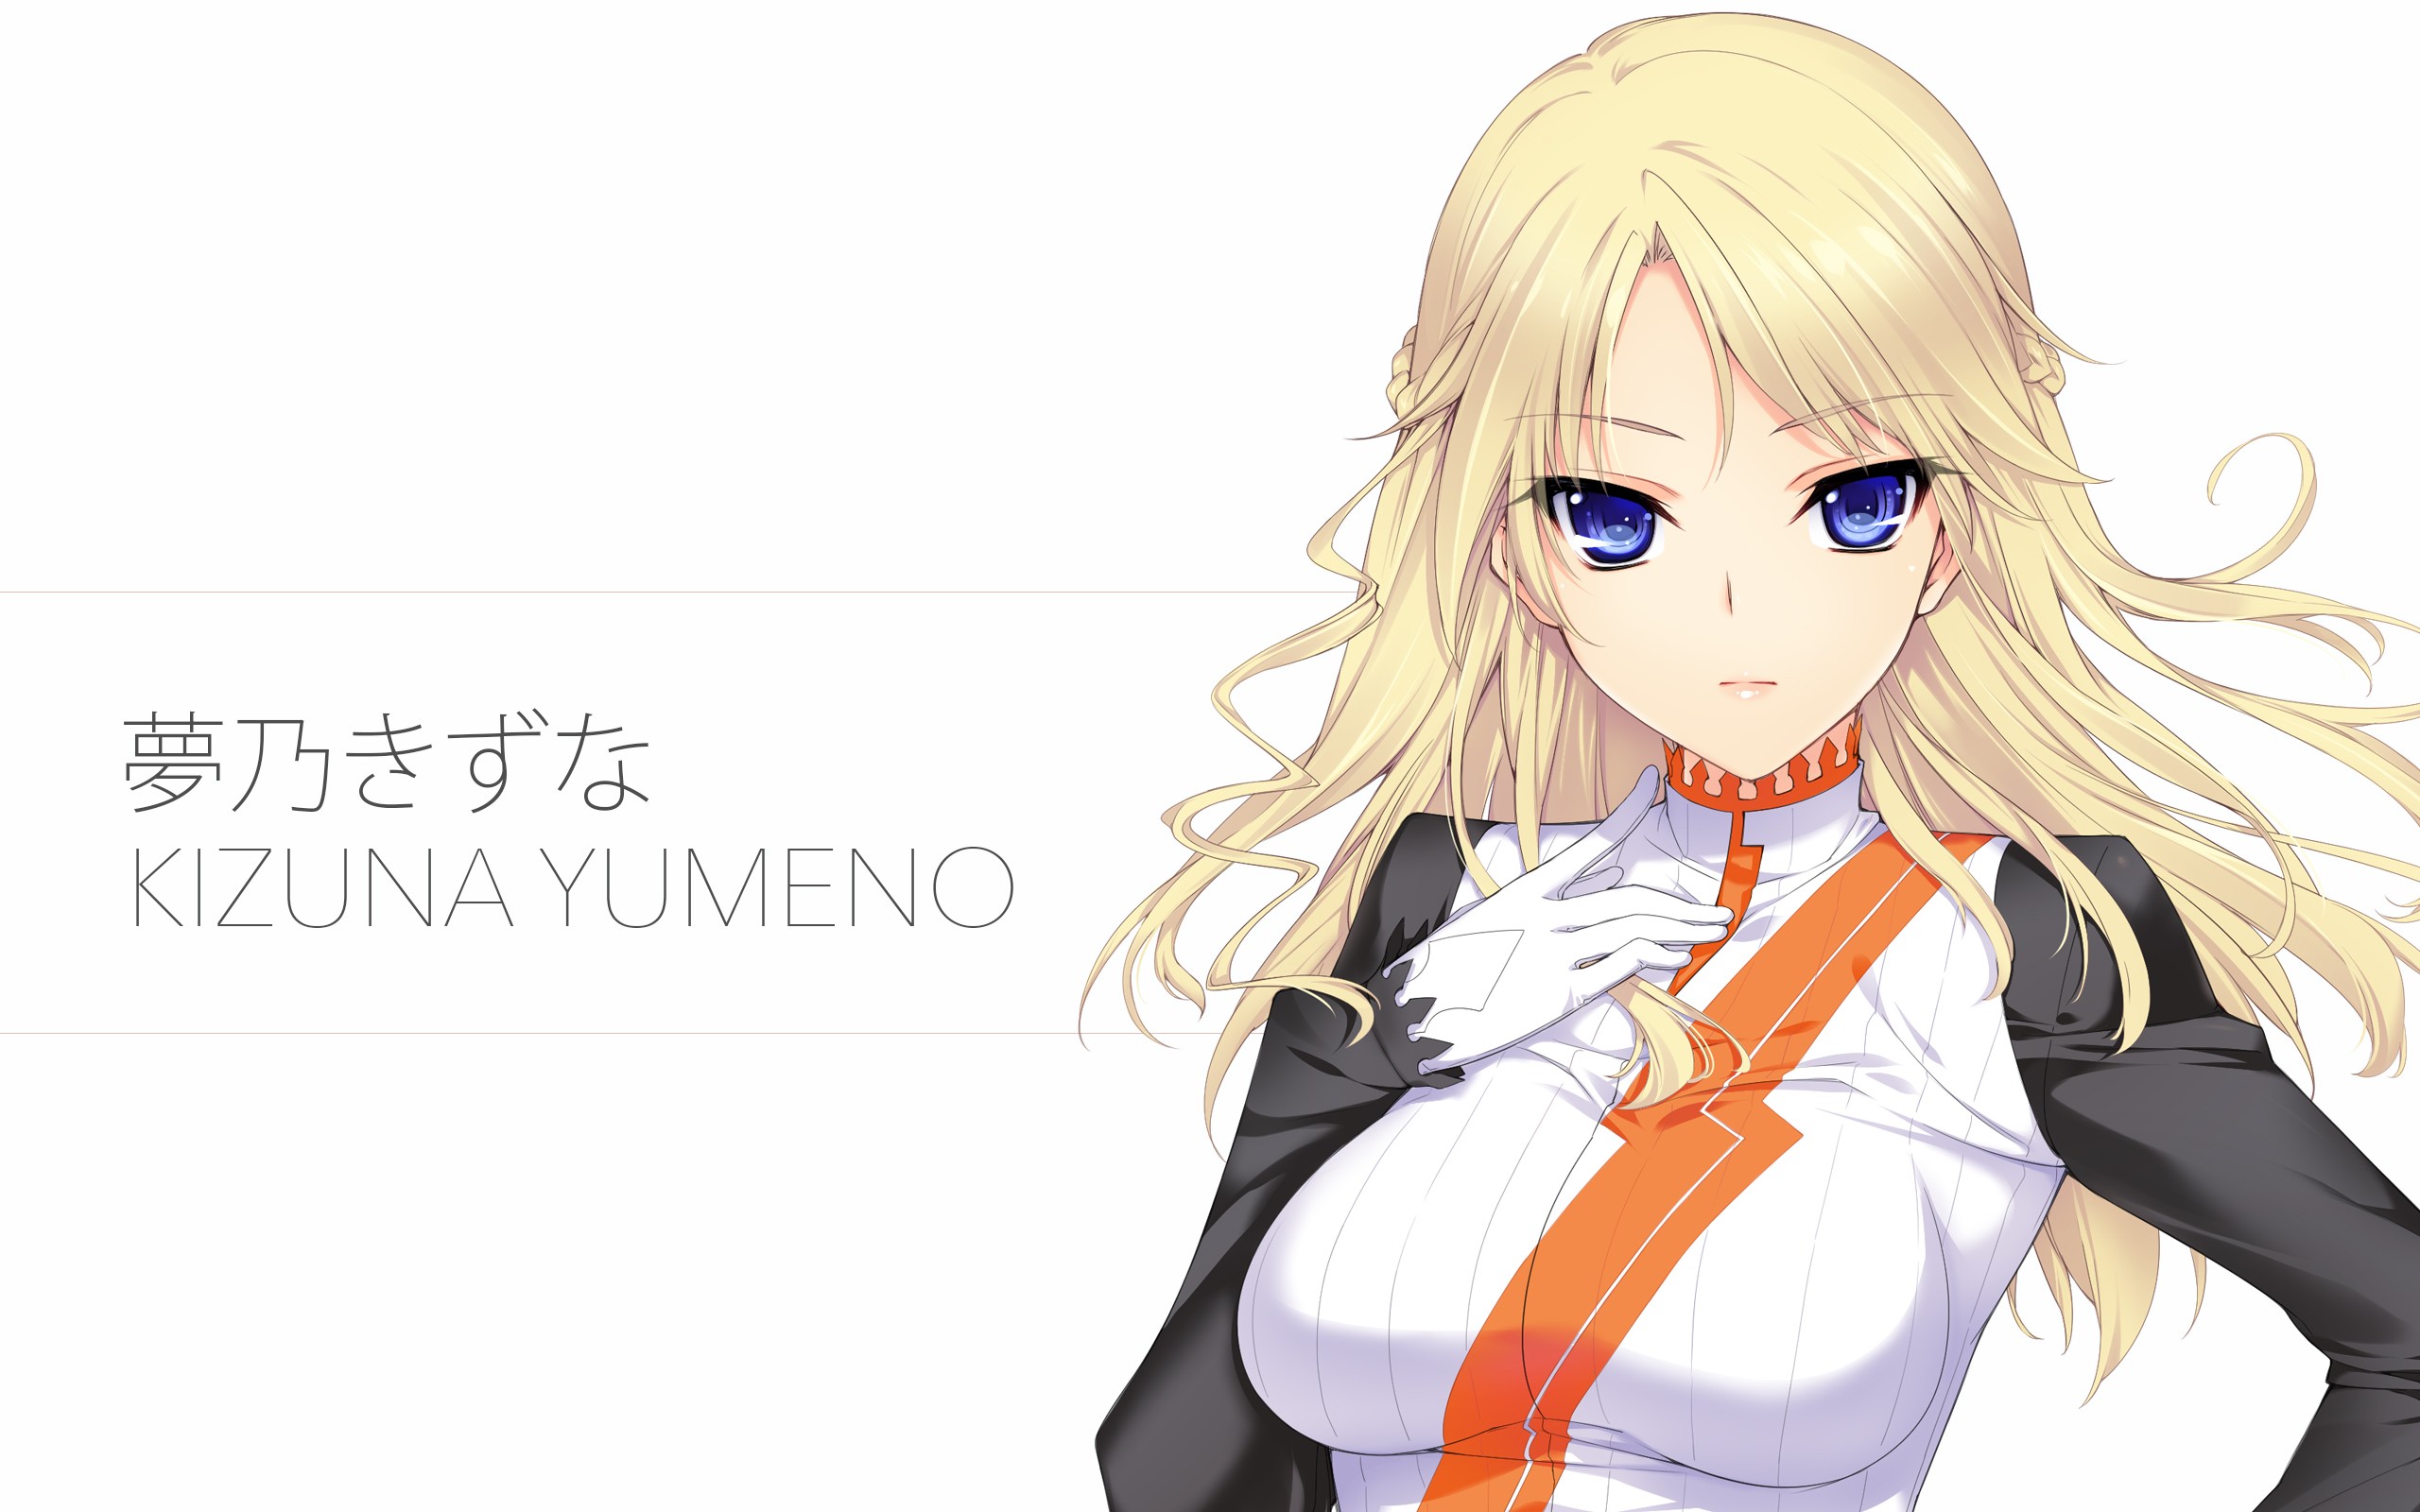 Wallpaper : illustration, blonde, long hair, anime girls 